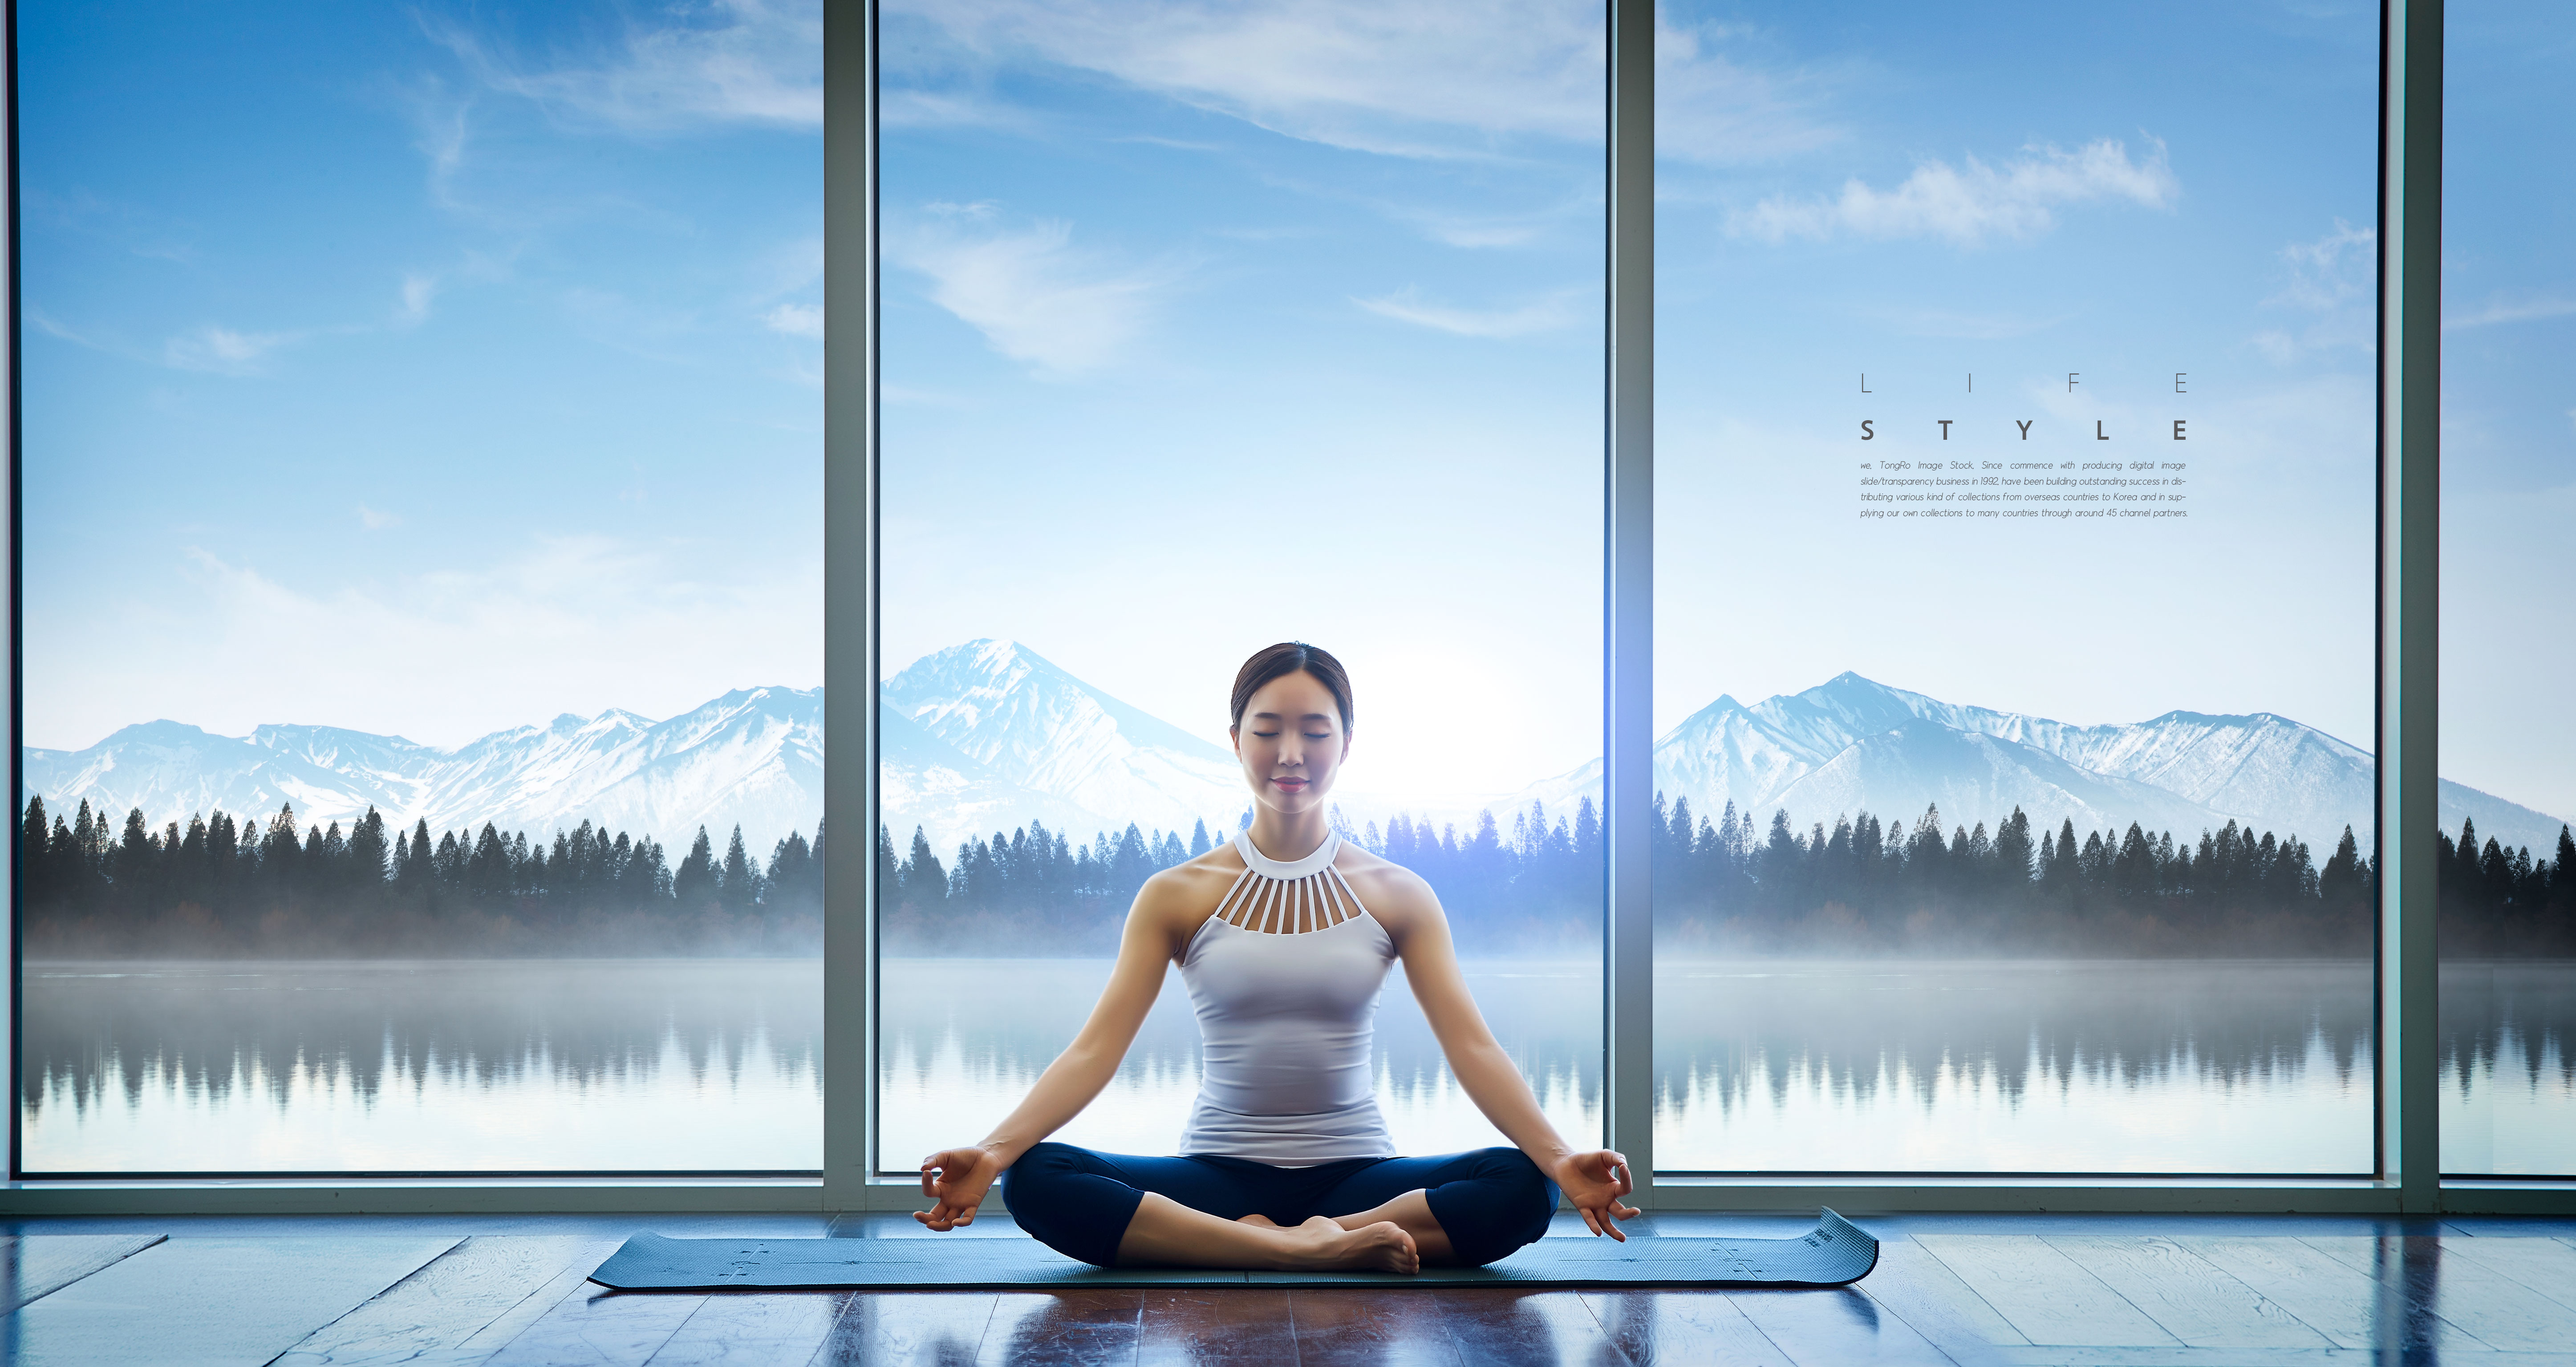 瑜伽打坐养生健康生活方式海报设计素材插图